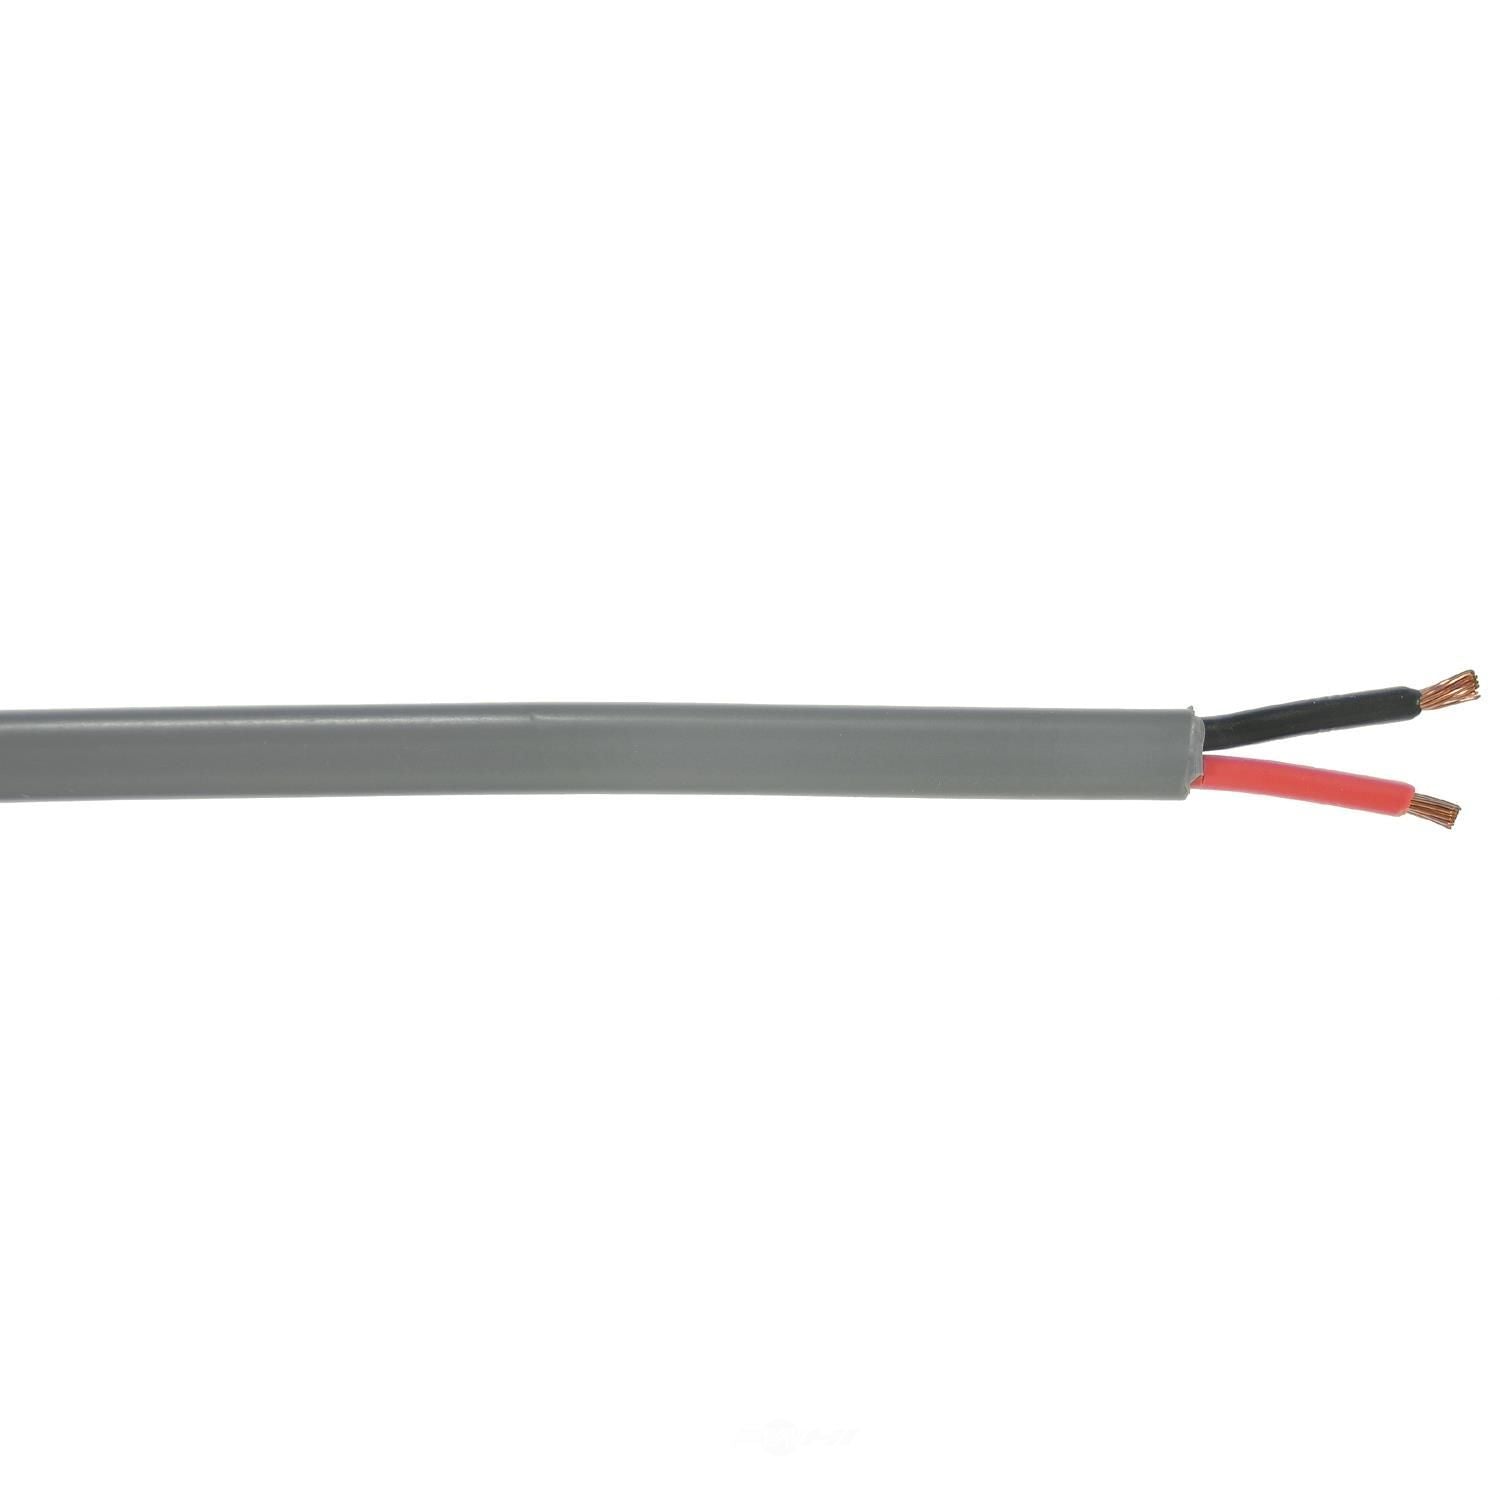 EC C16-2E Flat Multi-Conductor Primary Wire (16G, 2 Wire)